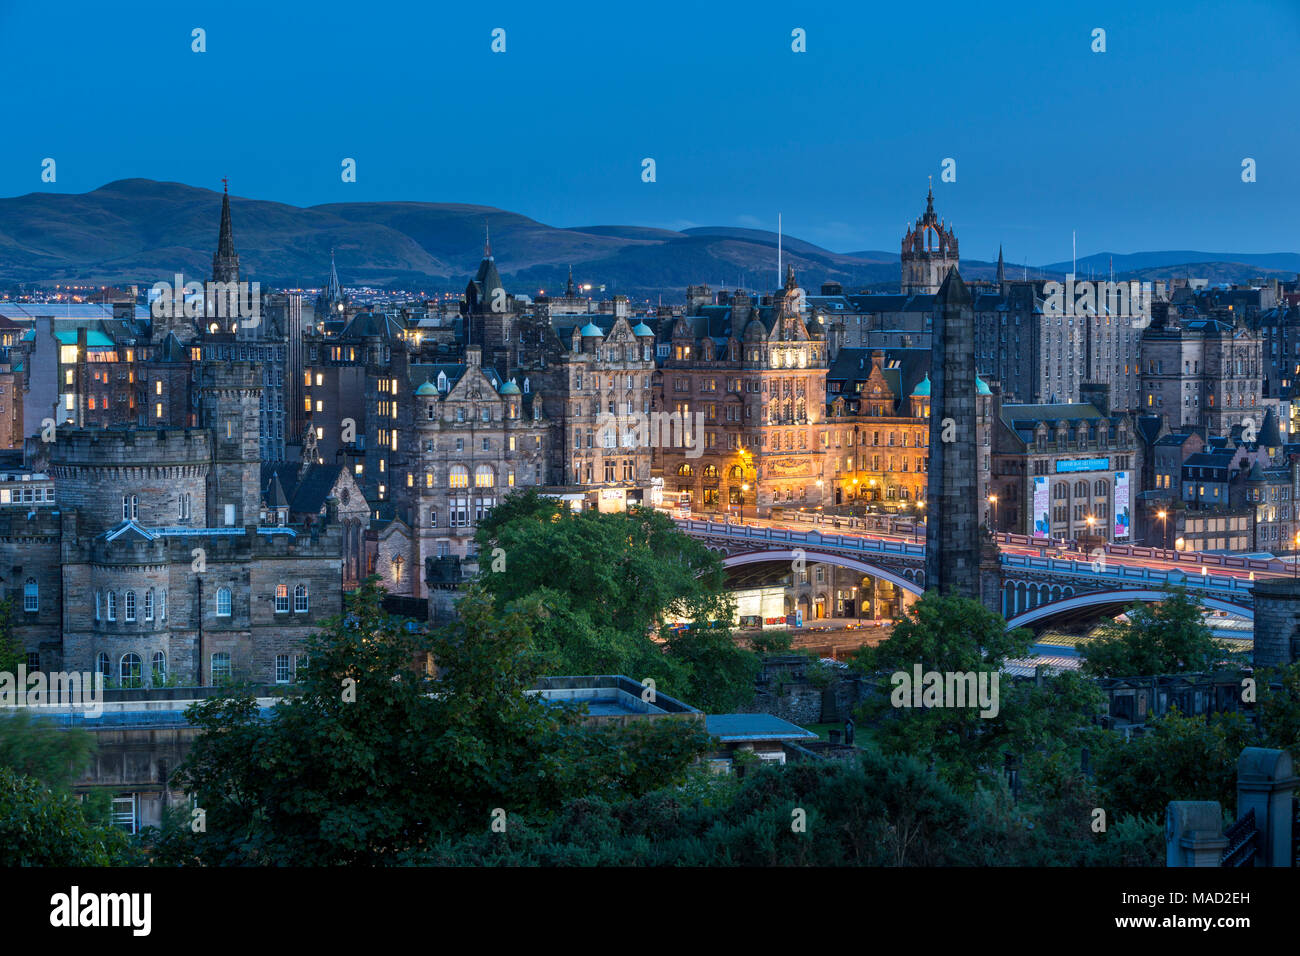 Über alte St Andrew's Haus und Gebäude in Edinburgh, Schottland, UK Twilight Stockfoto